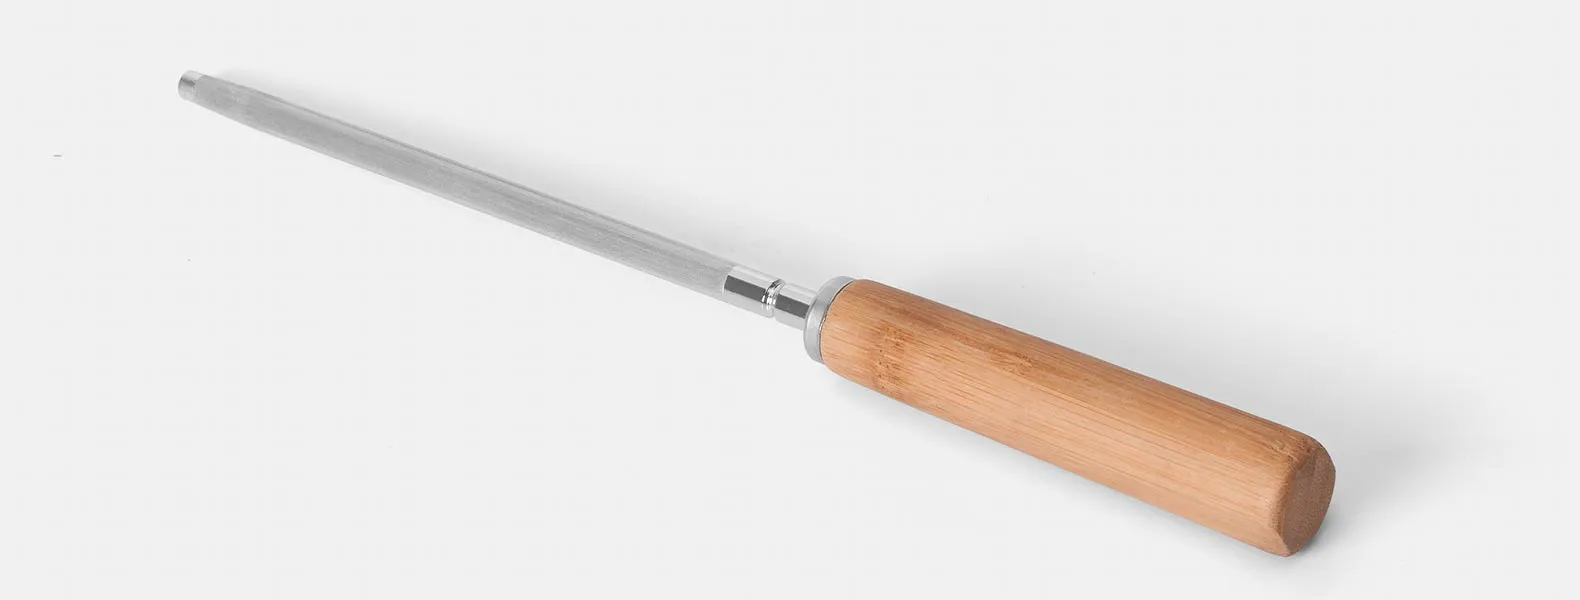 Conjunto para churrasco em Bambu/Inox. Acompanha tábua em bambu com sulco, faca 8'', garfo e chaira em Bambu/Inox. Como cortesia, na faca 8 fazemos uma gravação com os cortes do boi.